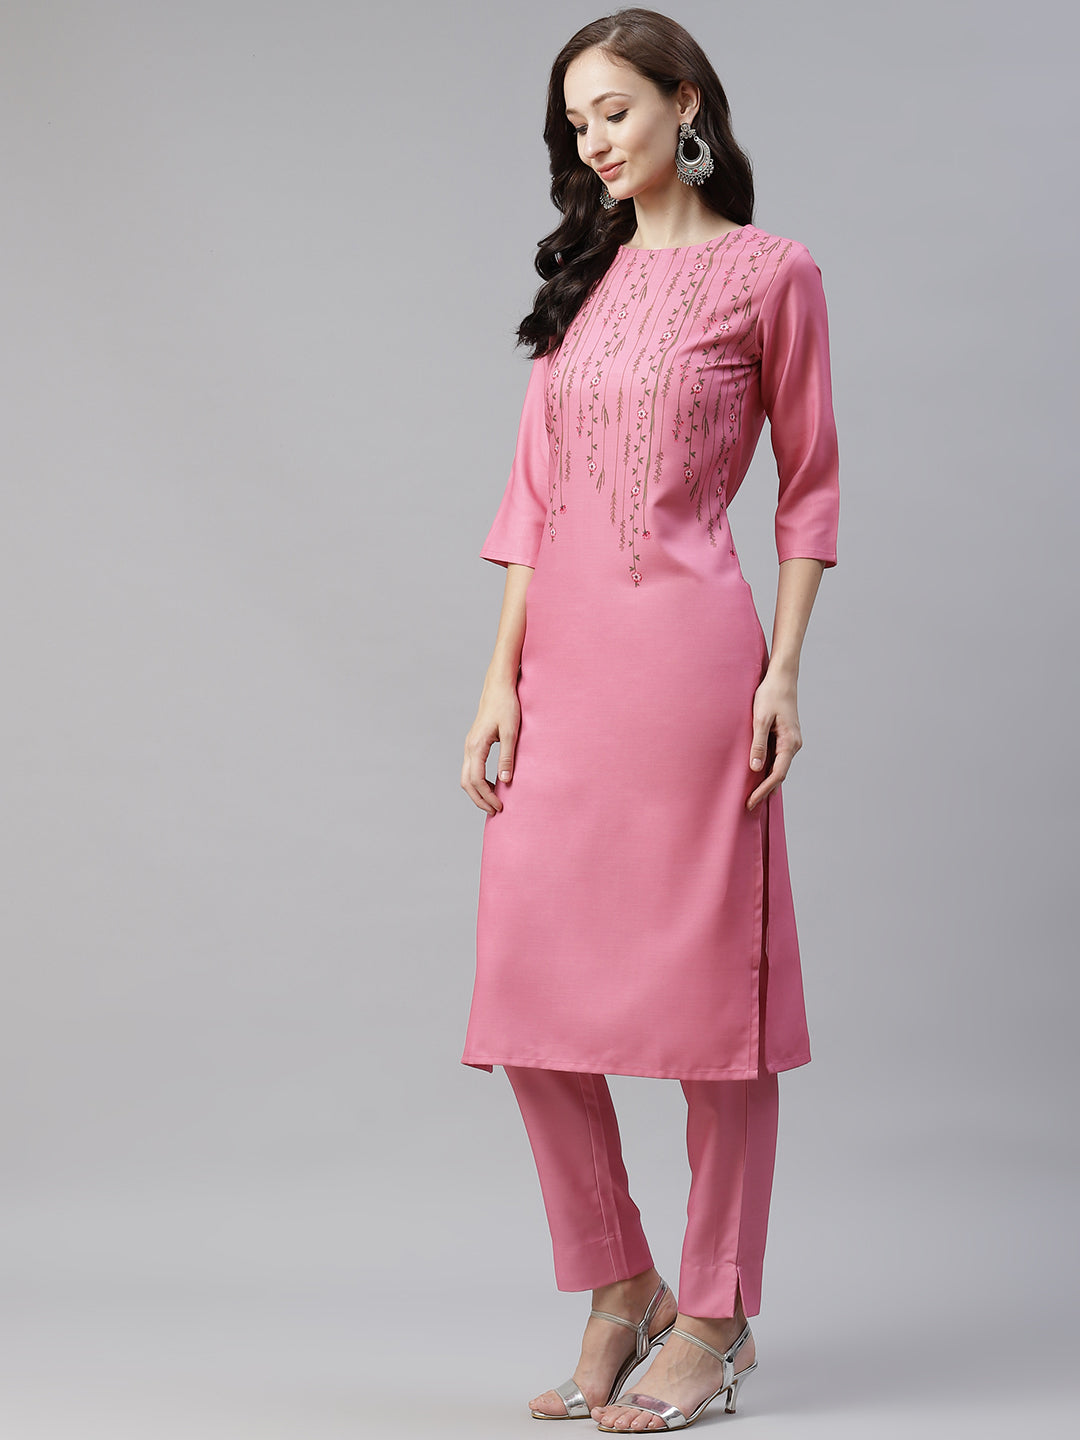 Women's Pink Color Digital Printed Straight Kurta And Pant Set - Ziyaa